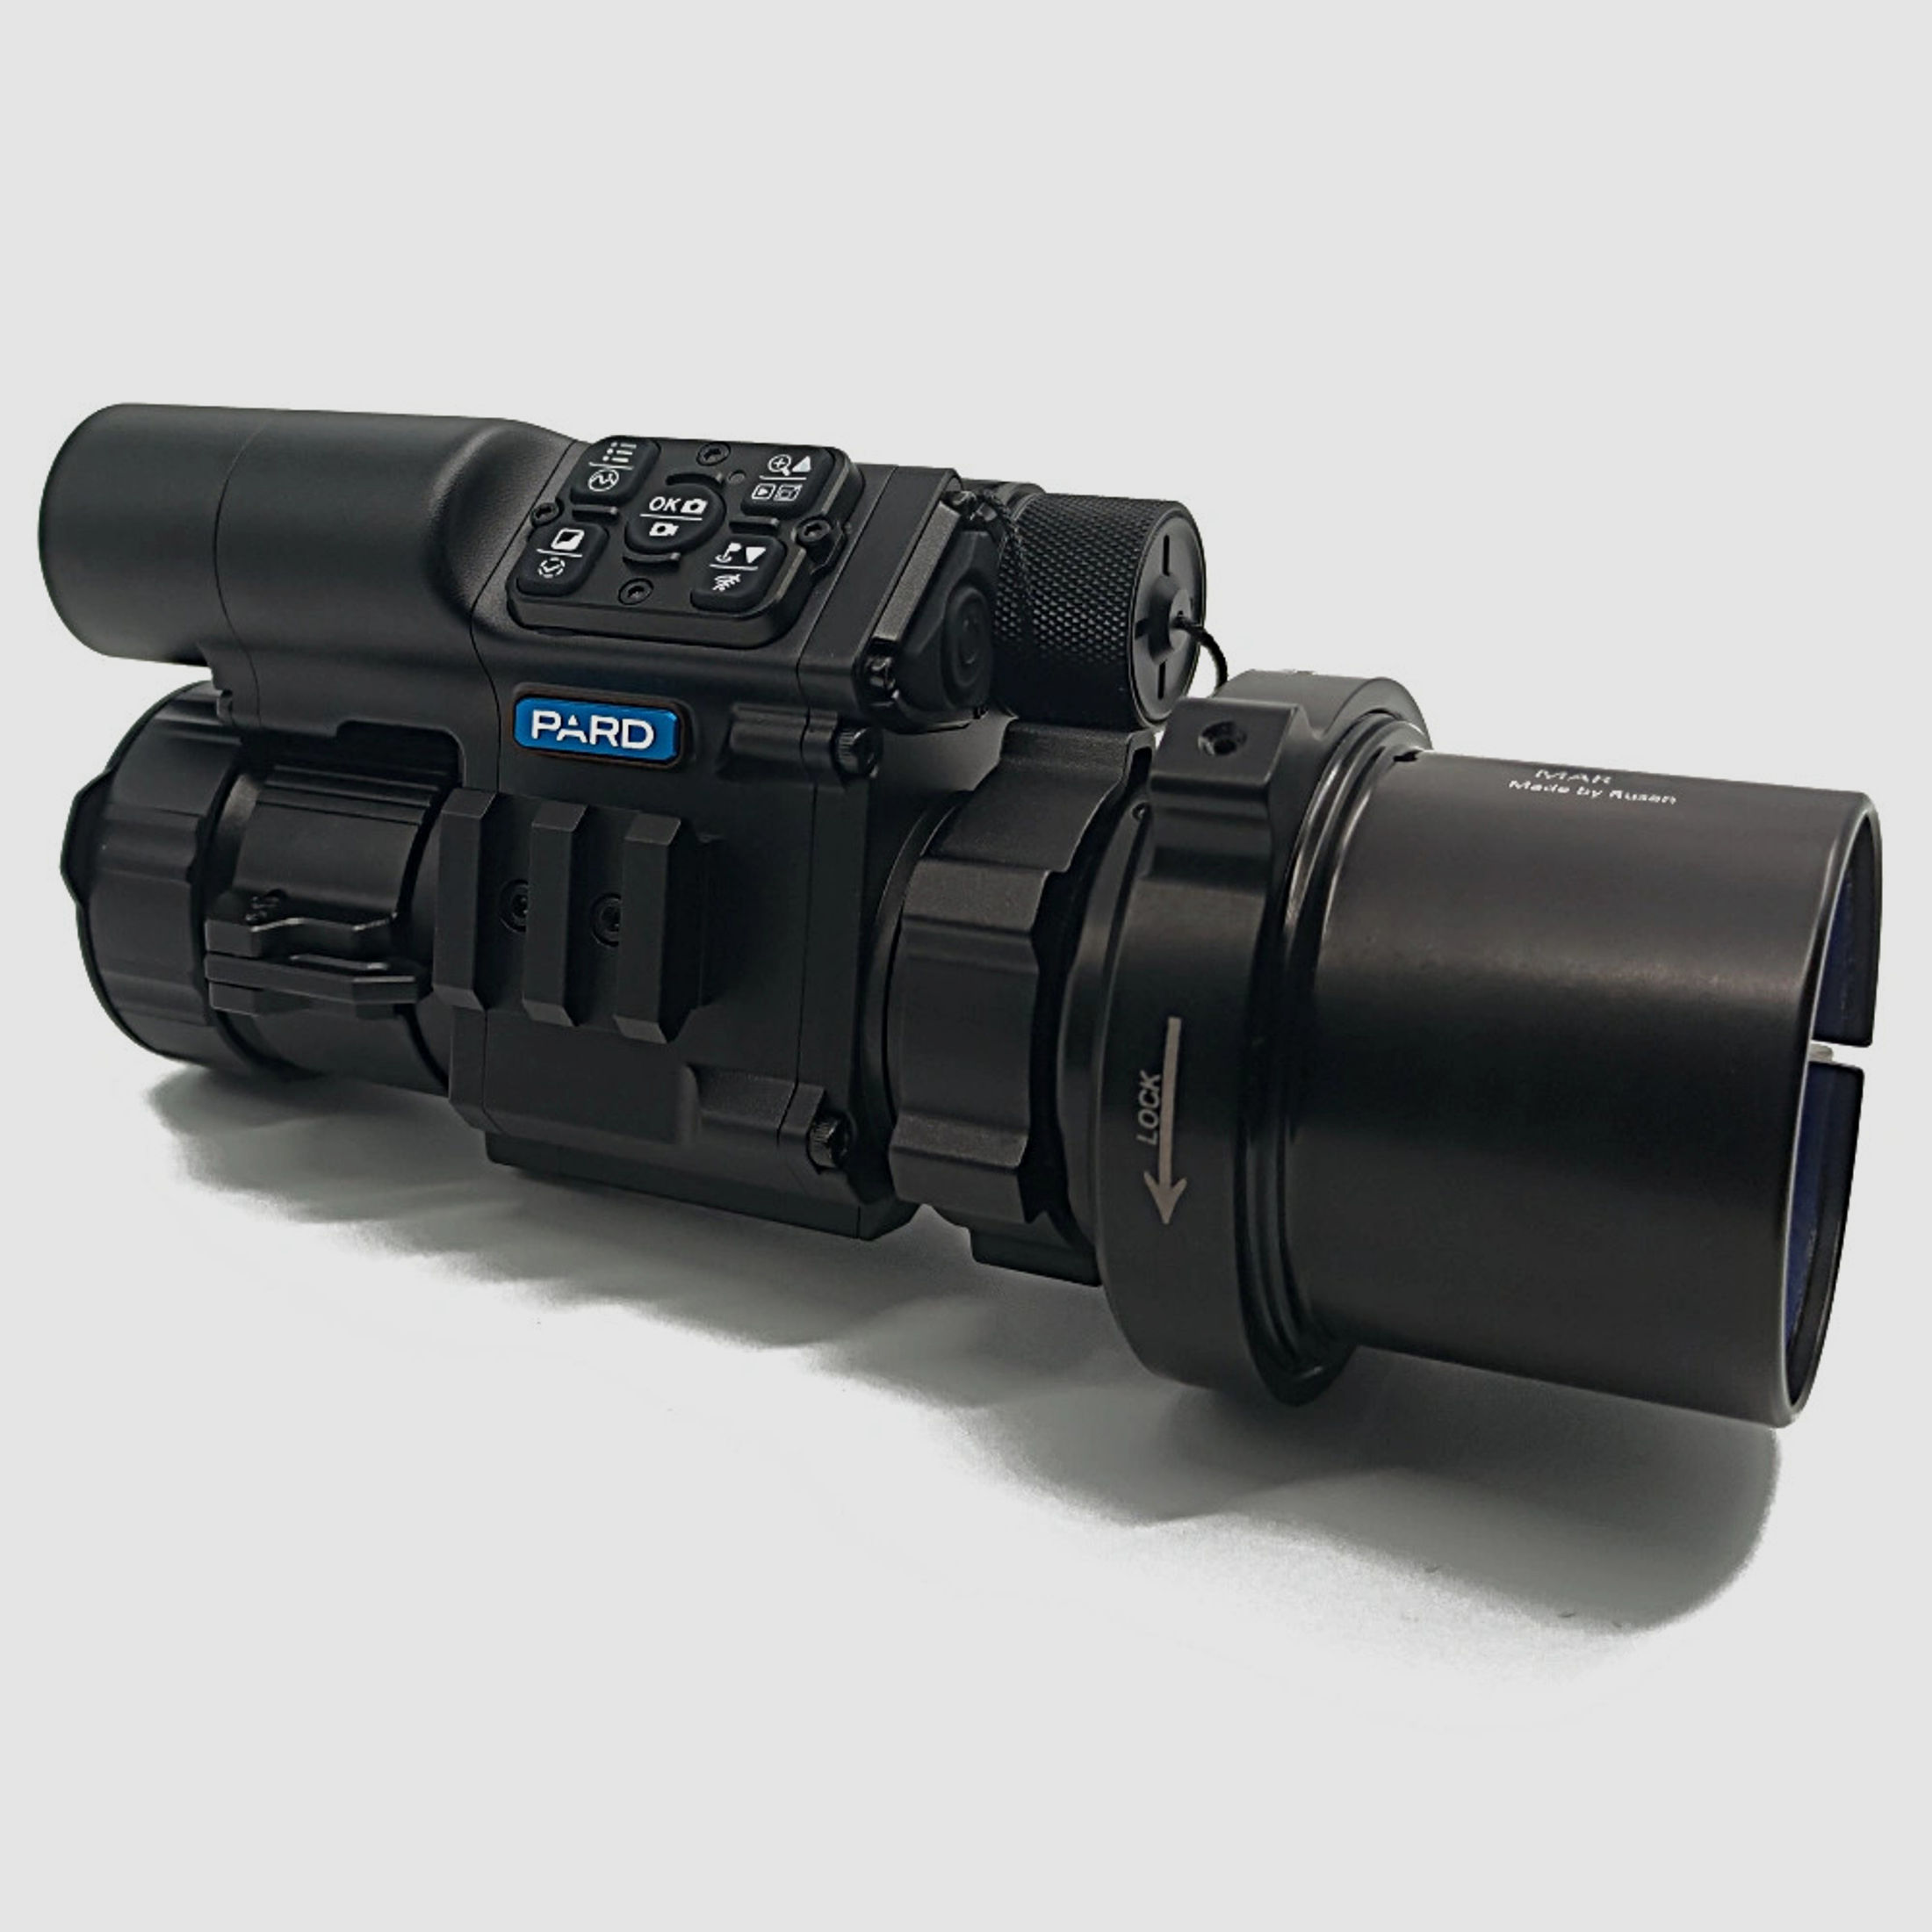 PARD FD1 Nachtsicht 3 in 1 Vorsatz, Monokular & Zielfernrohr - 940 nm mit LRF 50 mm RUSAN MAR + RUSAN MCR